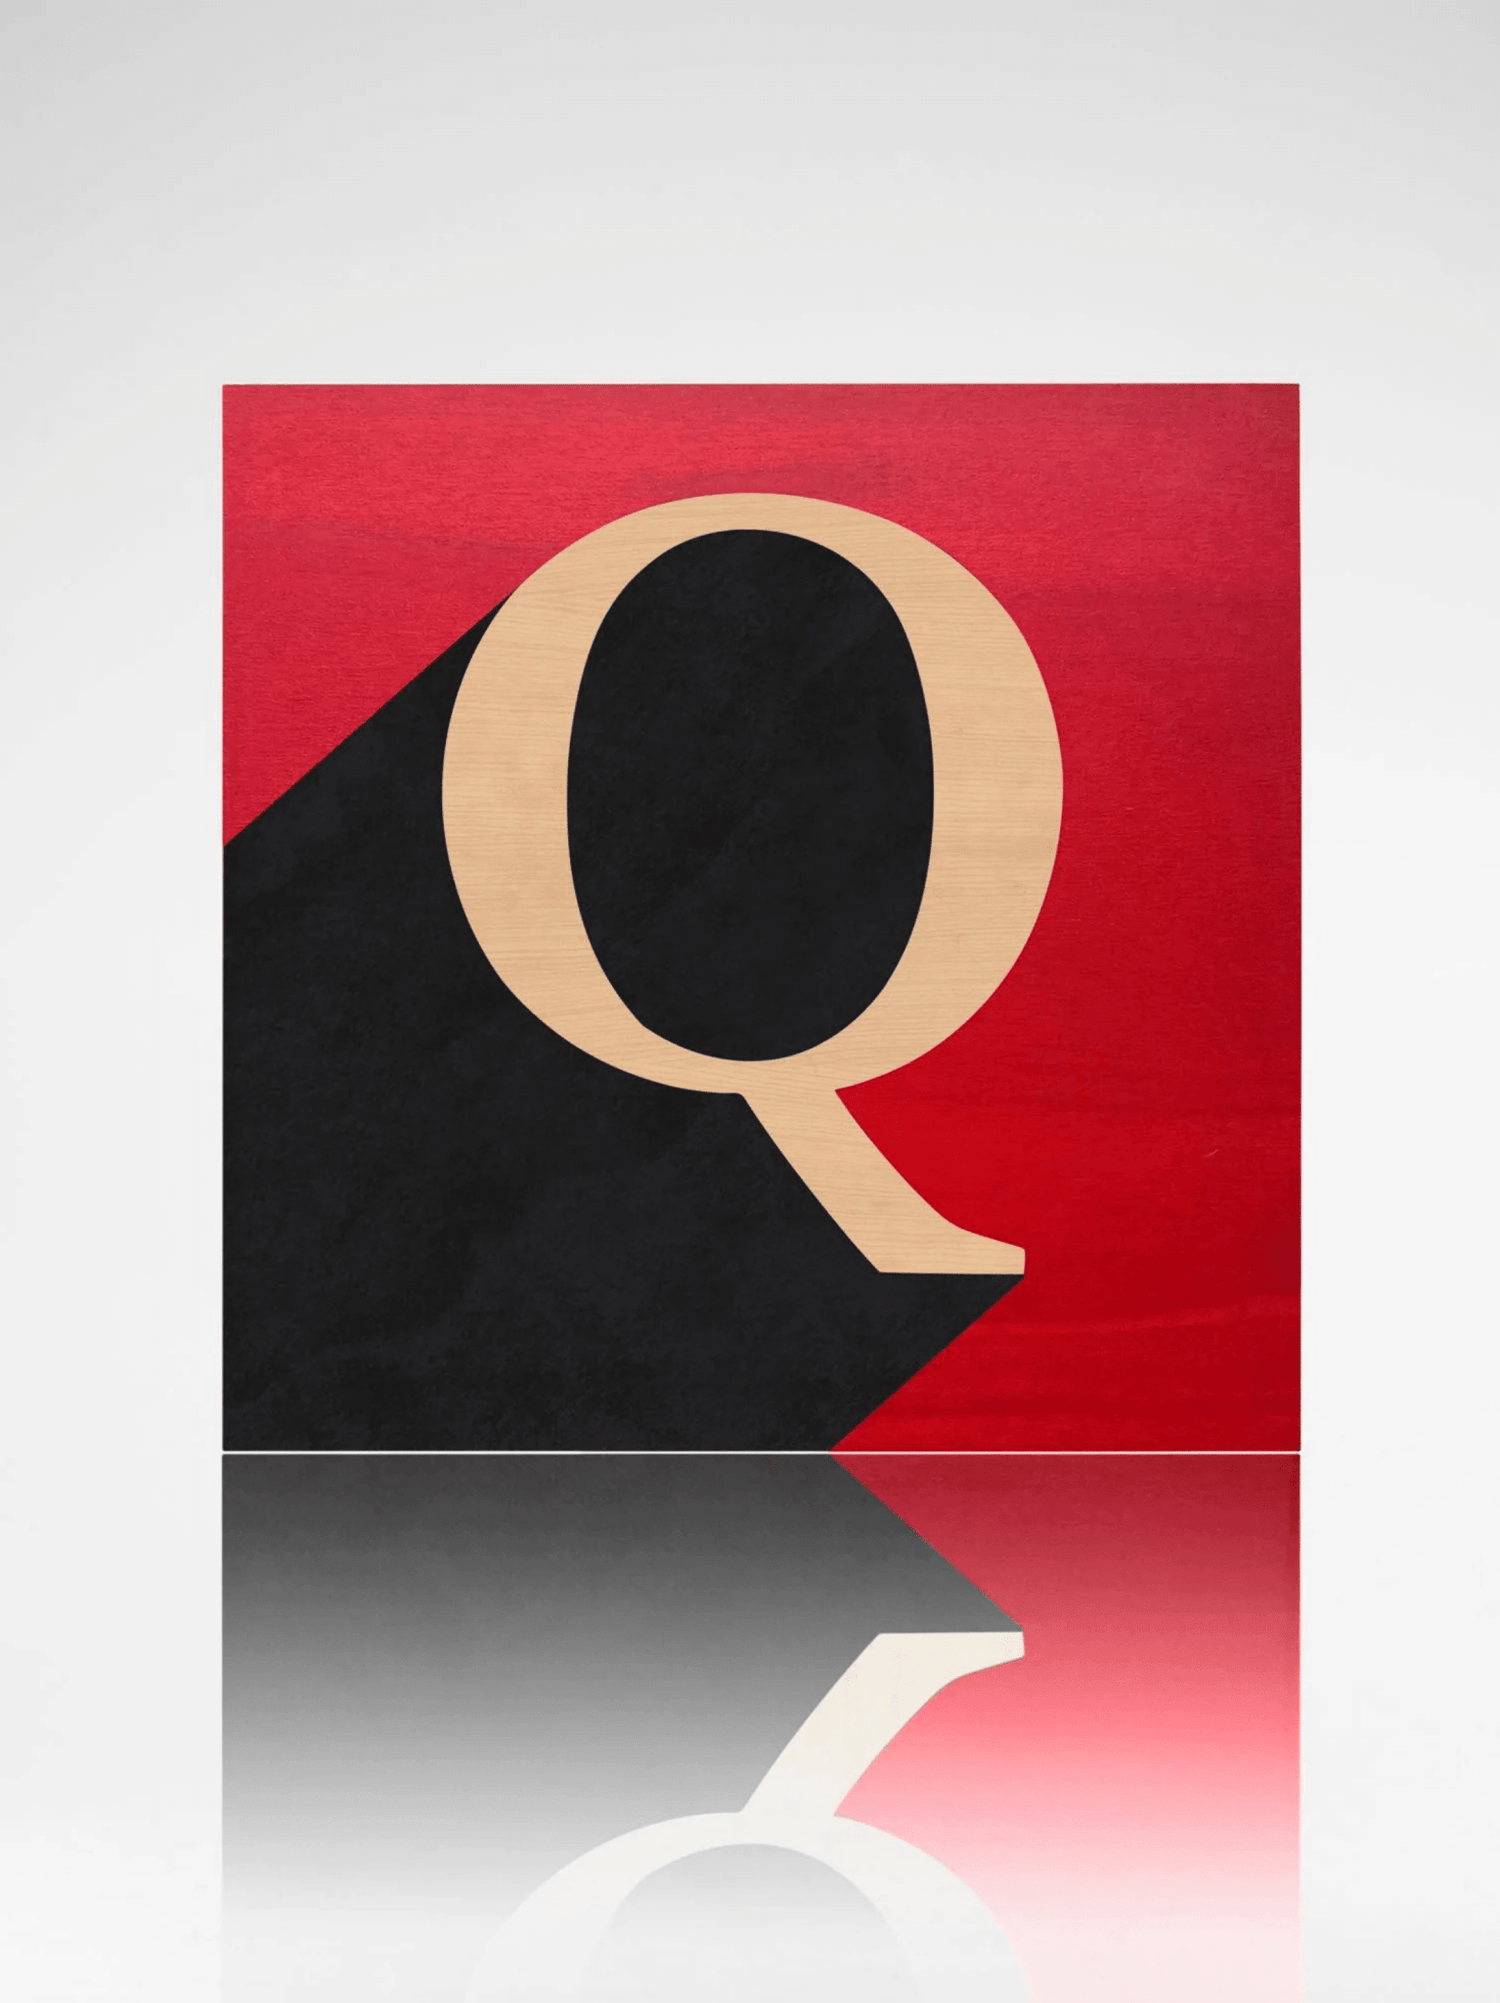 "Q" Alphabet Box